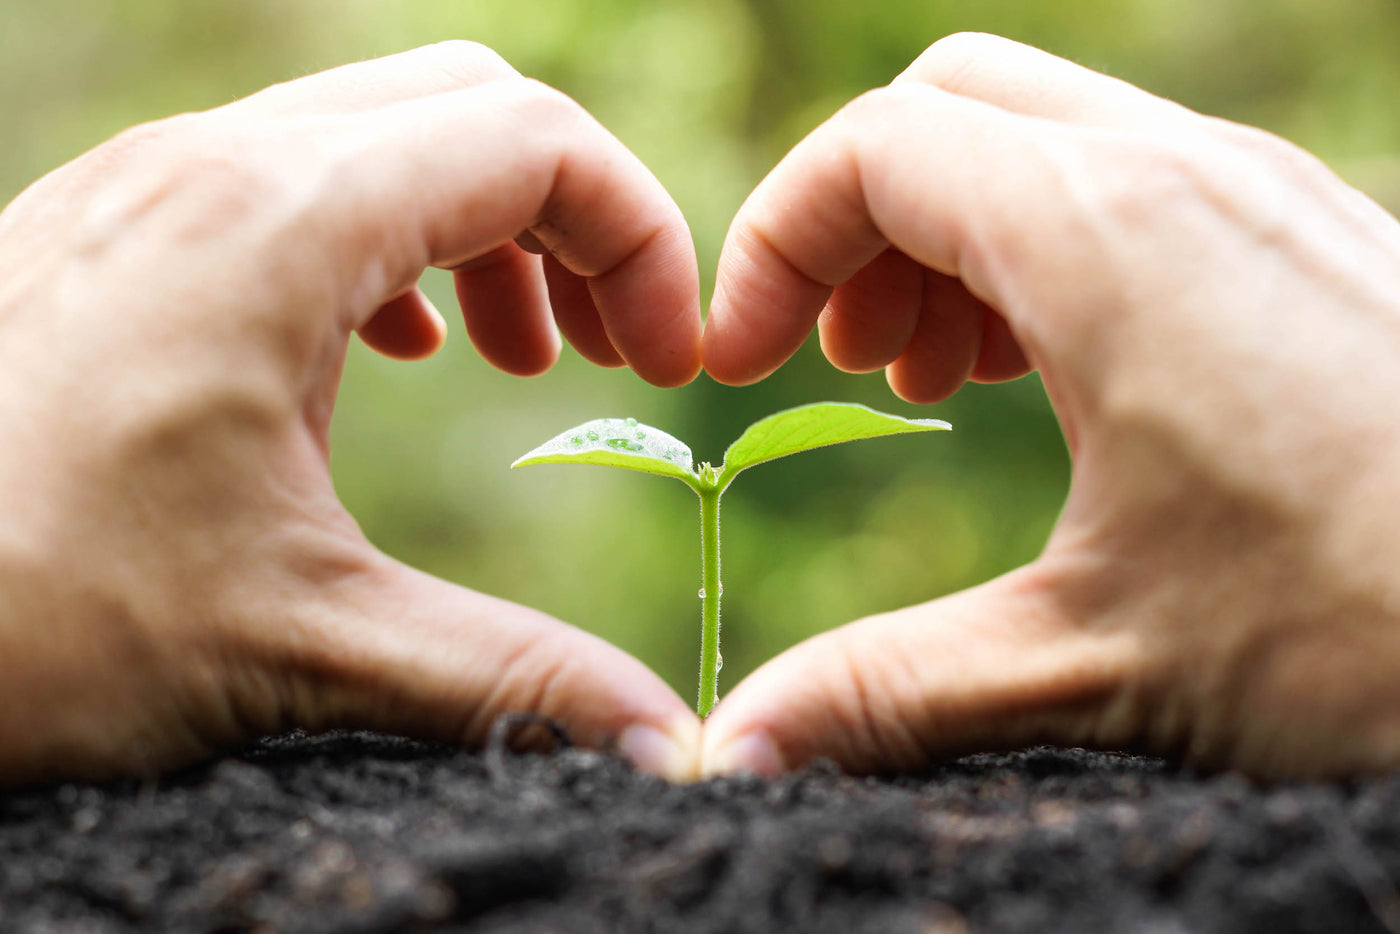 Zwei Hände formen ein Herz und in dem Herz wächst eine kleine Pflanze heran. Damit soll die Verbundenheit zur Natur aufgezeigt werden..